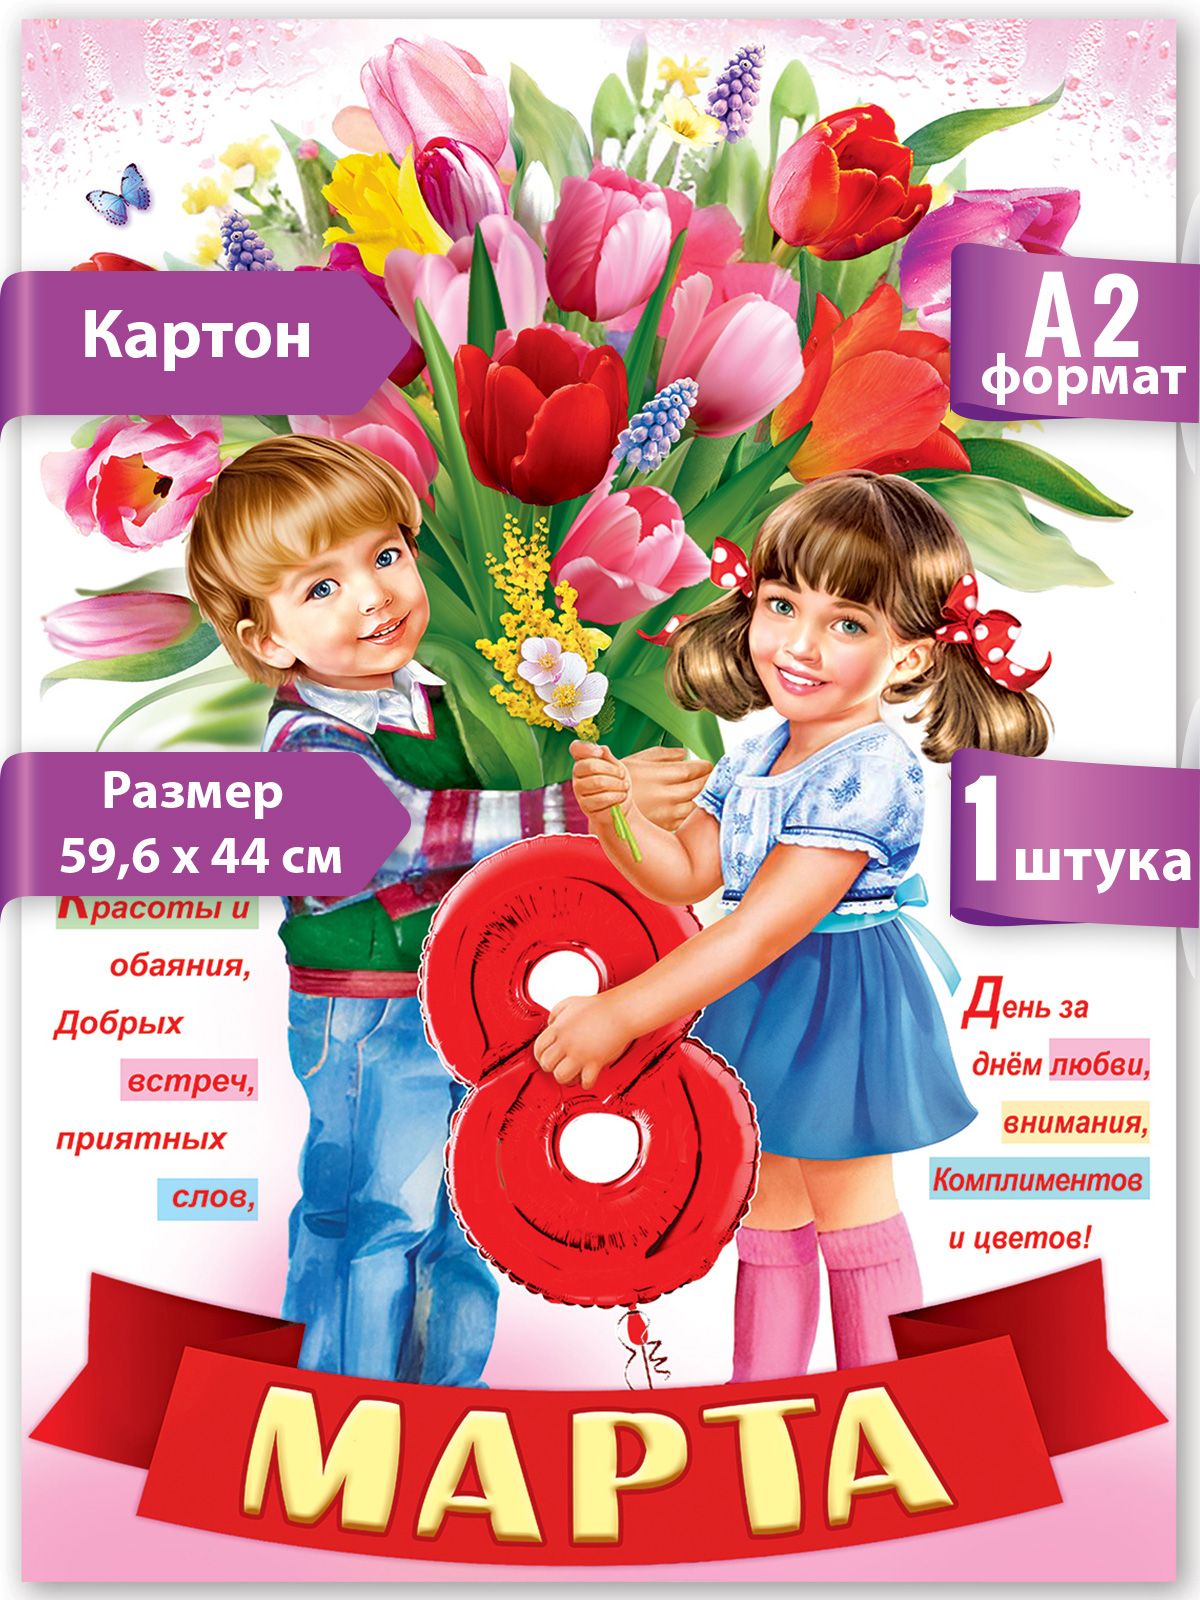 Купить плакат на 8 Марта в Москве от руб.